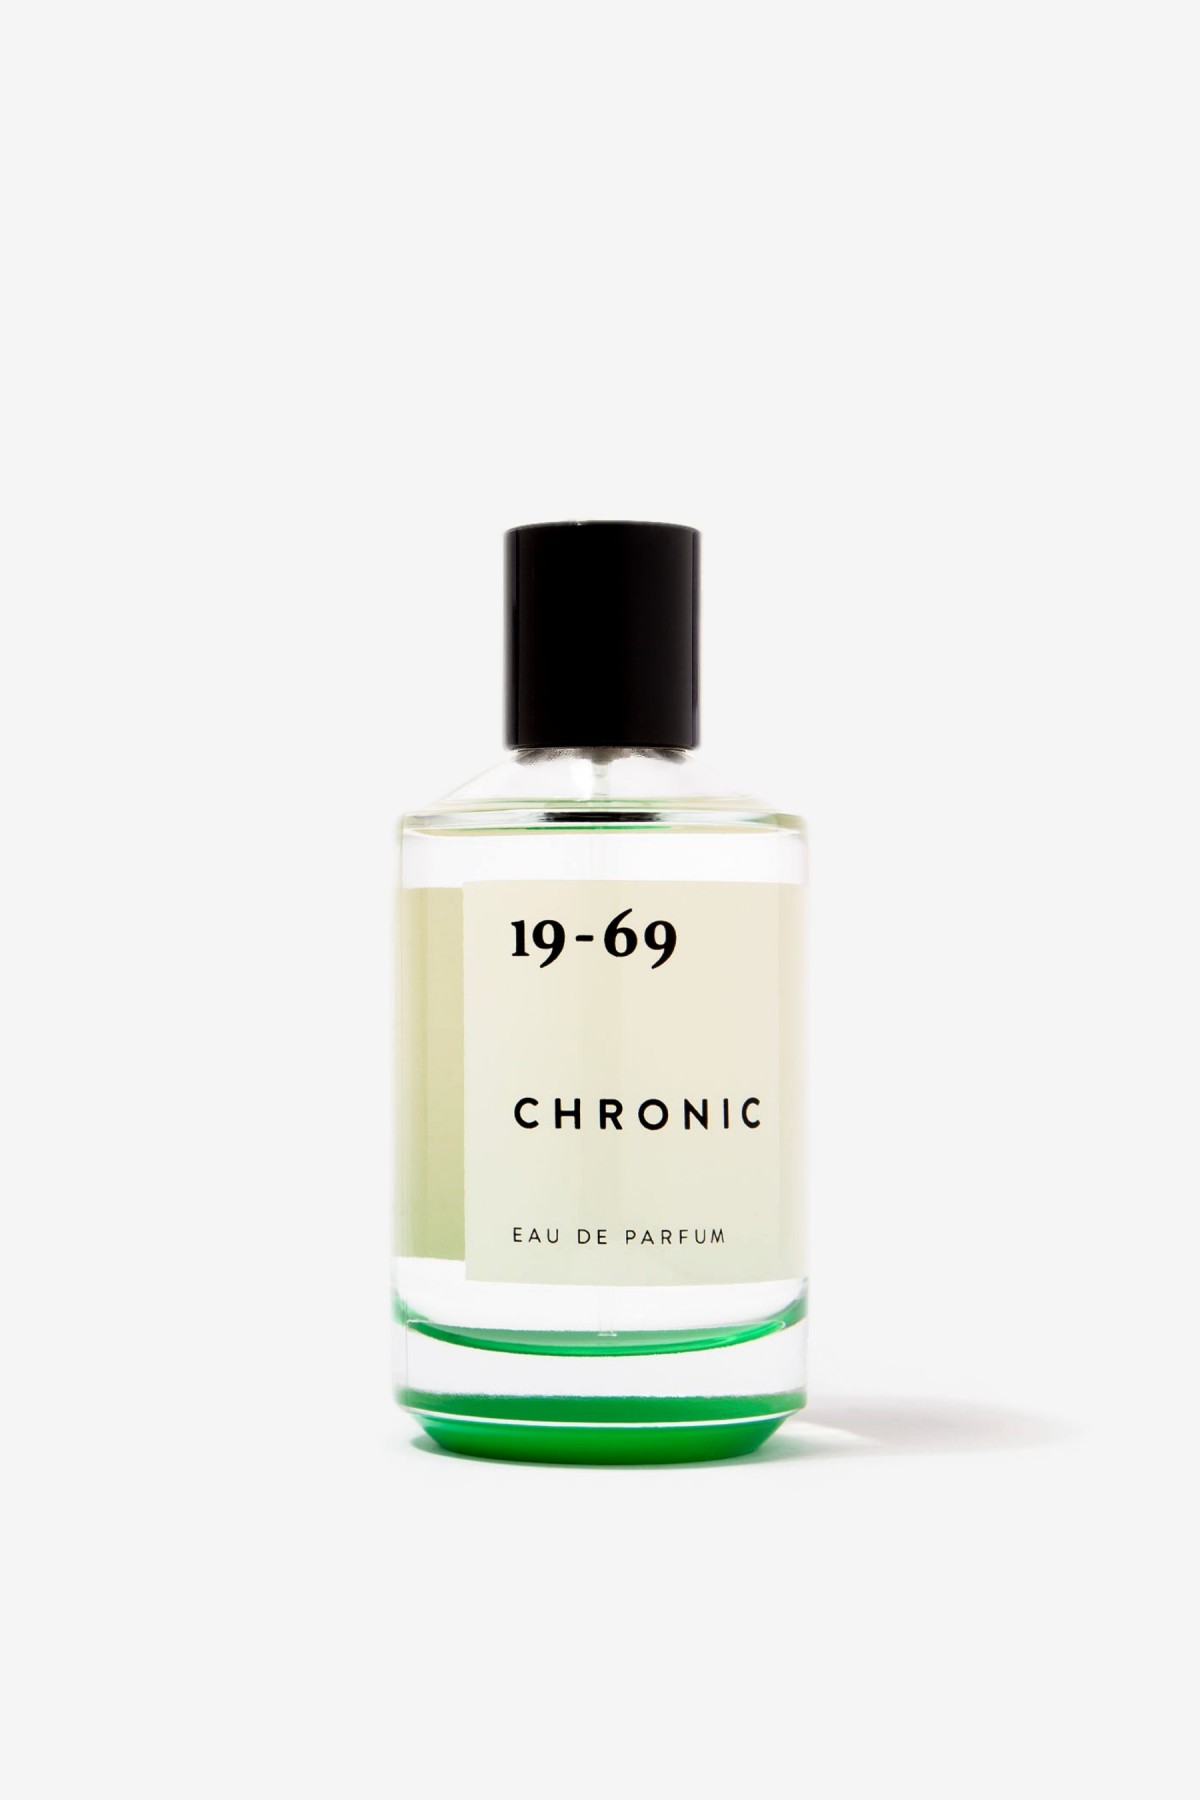 19-69 Chronic Eau de Parfum in 100ml